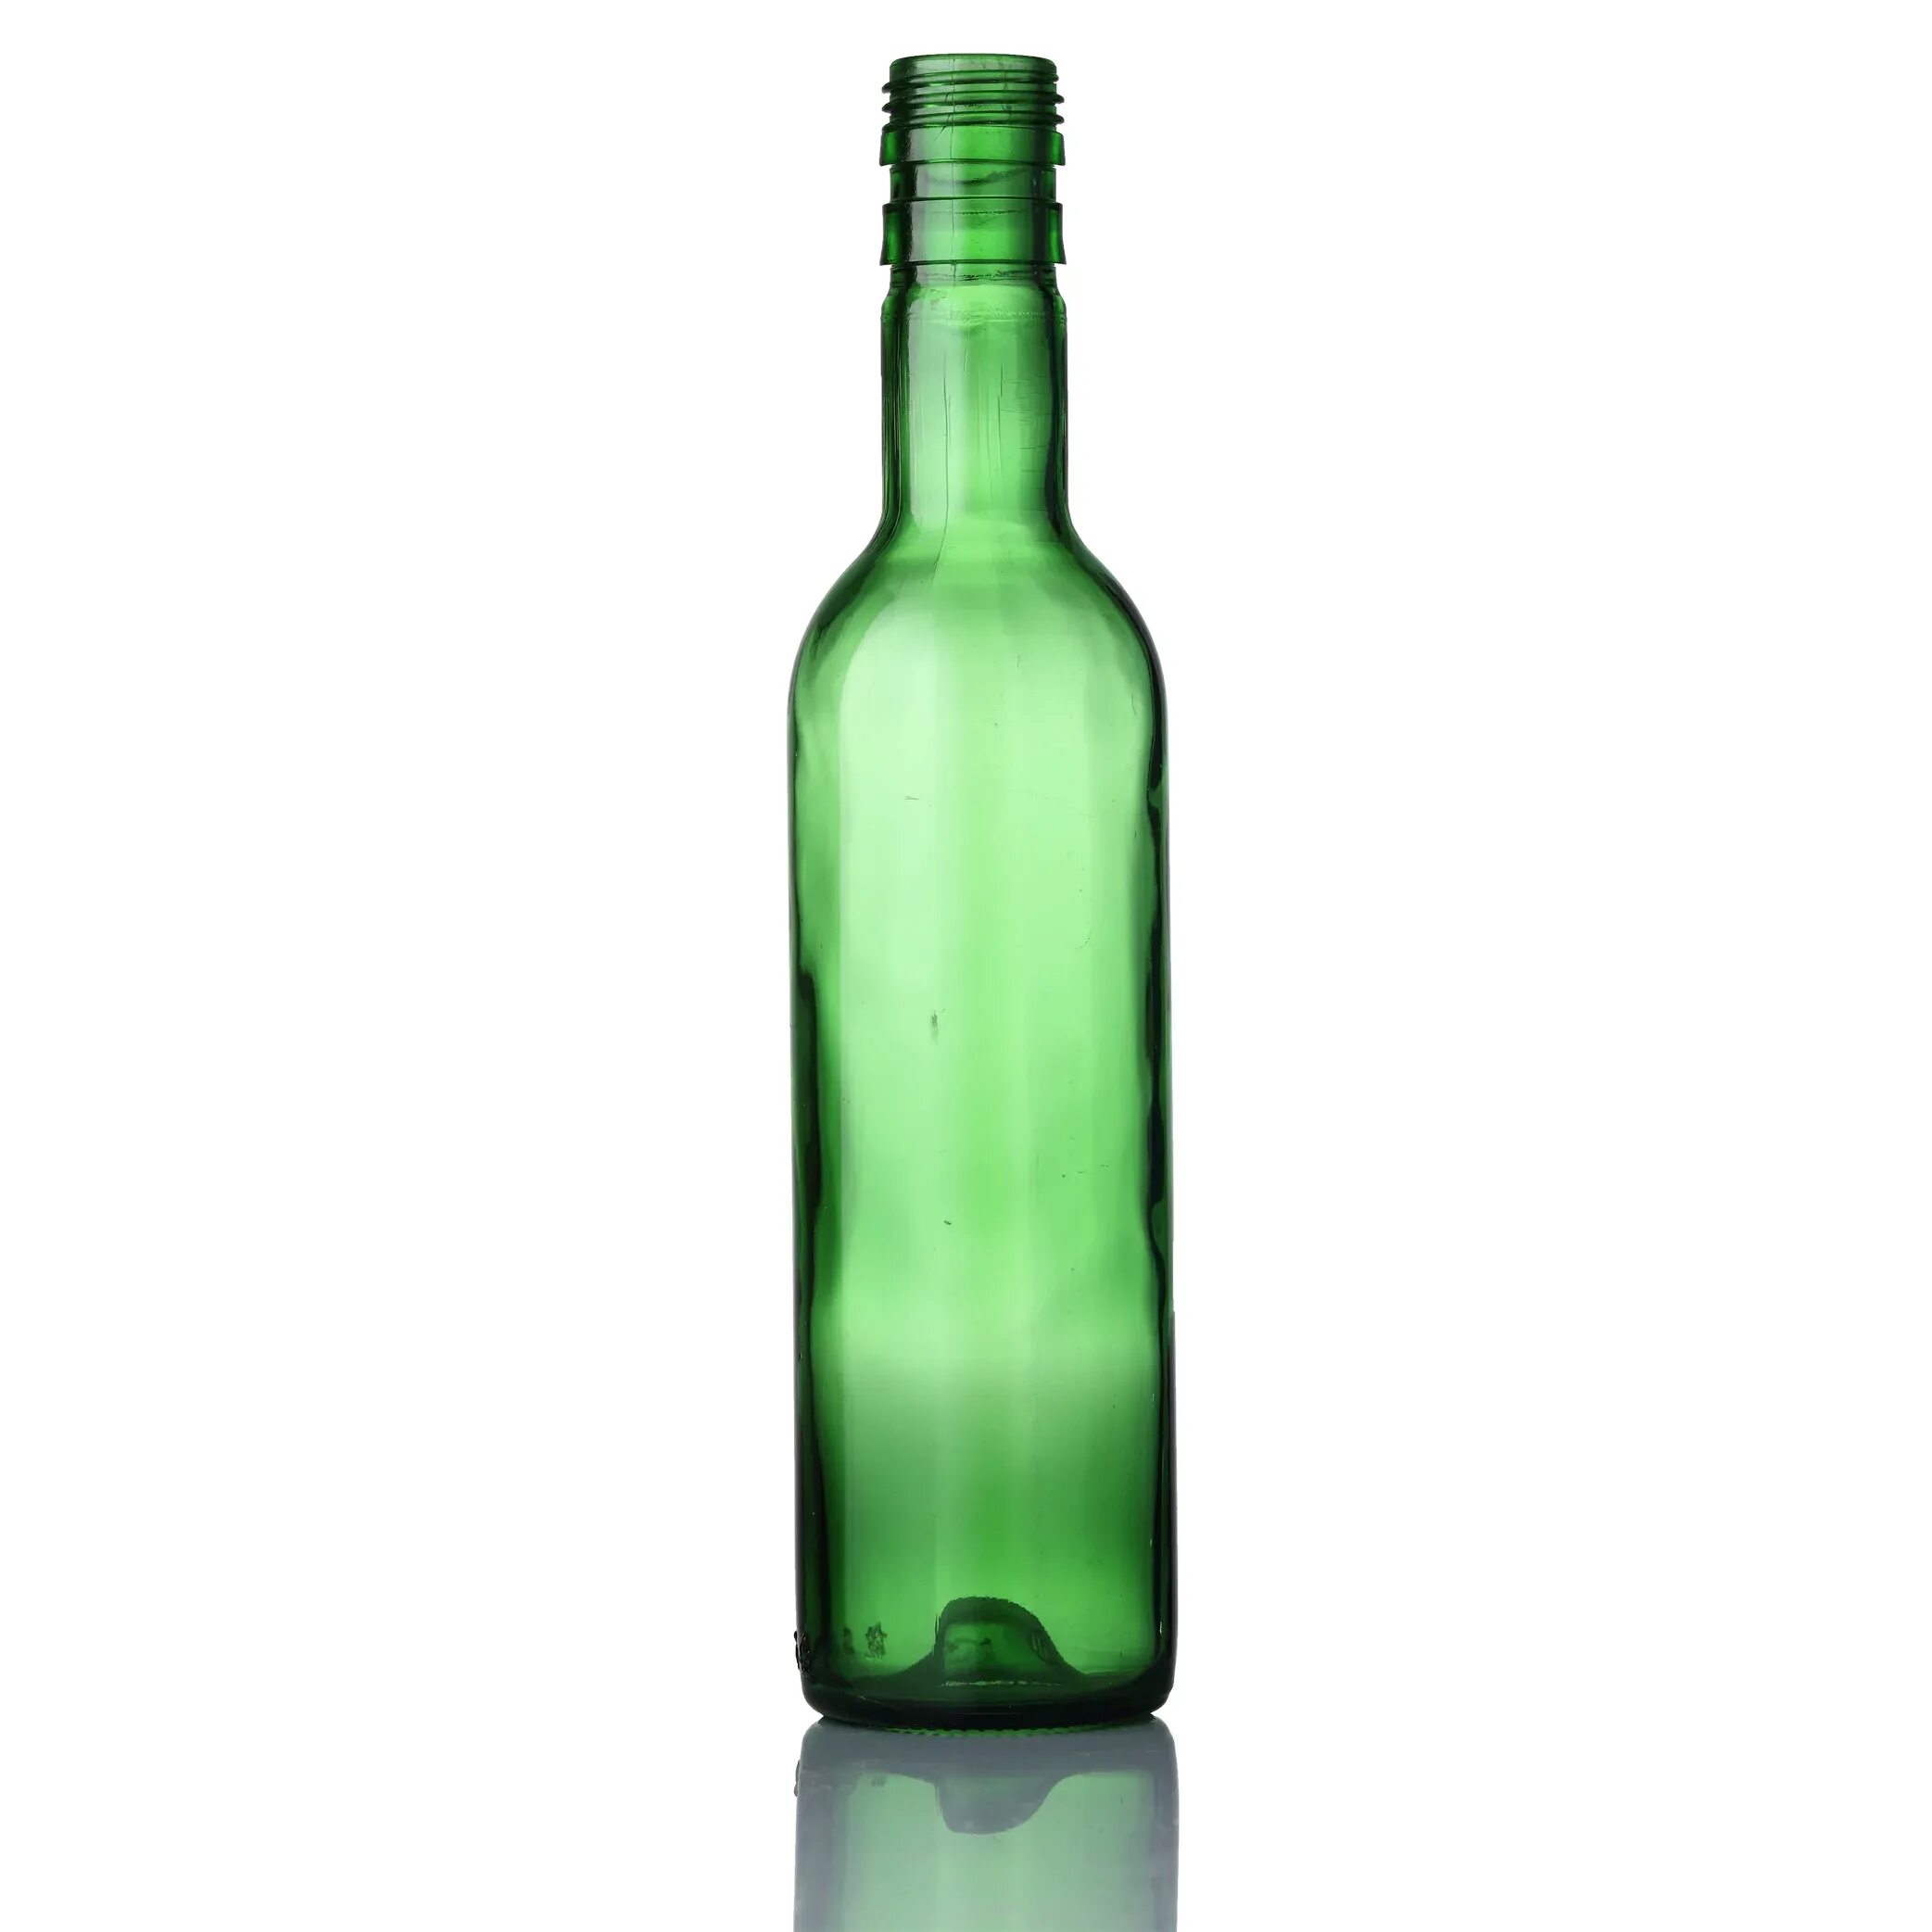 Стеклянная бутылка. В бутылке зеленый. Бутылка зеленое стекло. Бутфлка зелёная стеклянная. Бутылки зеленого цвета